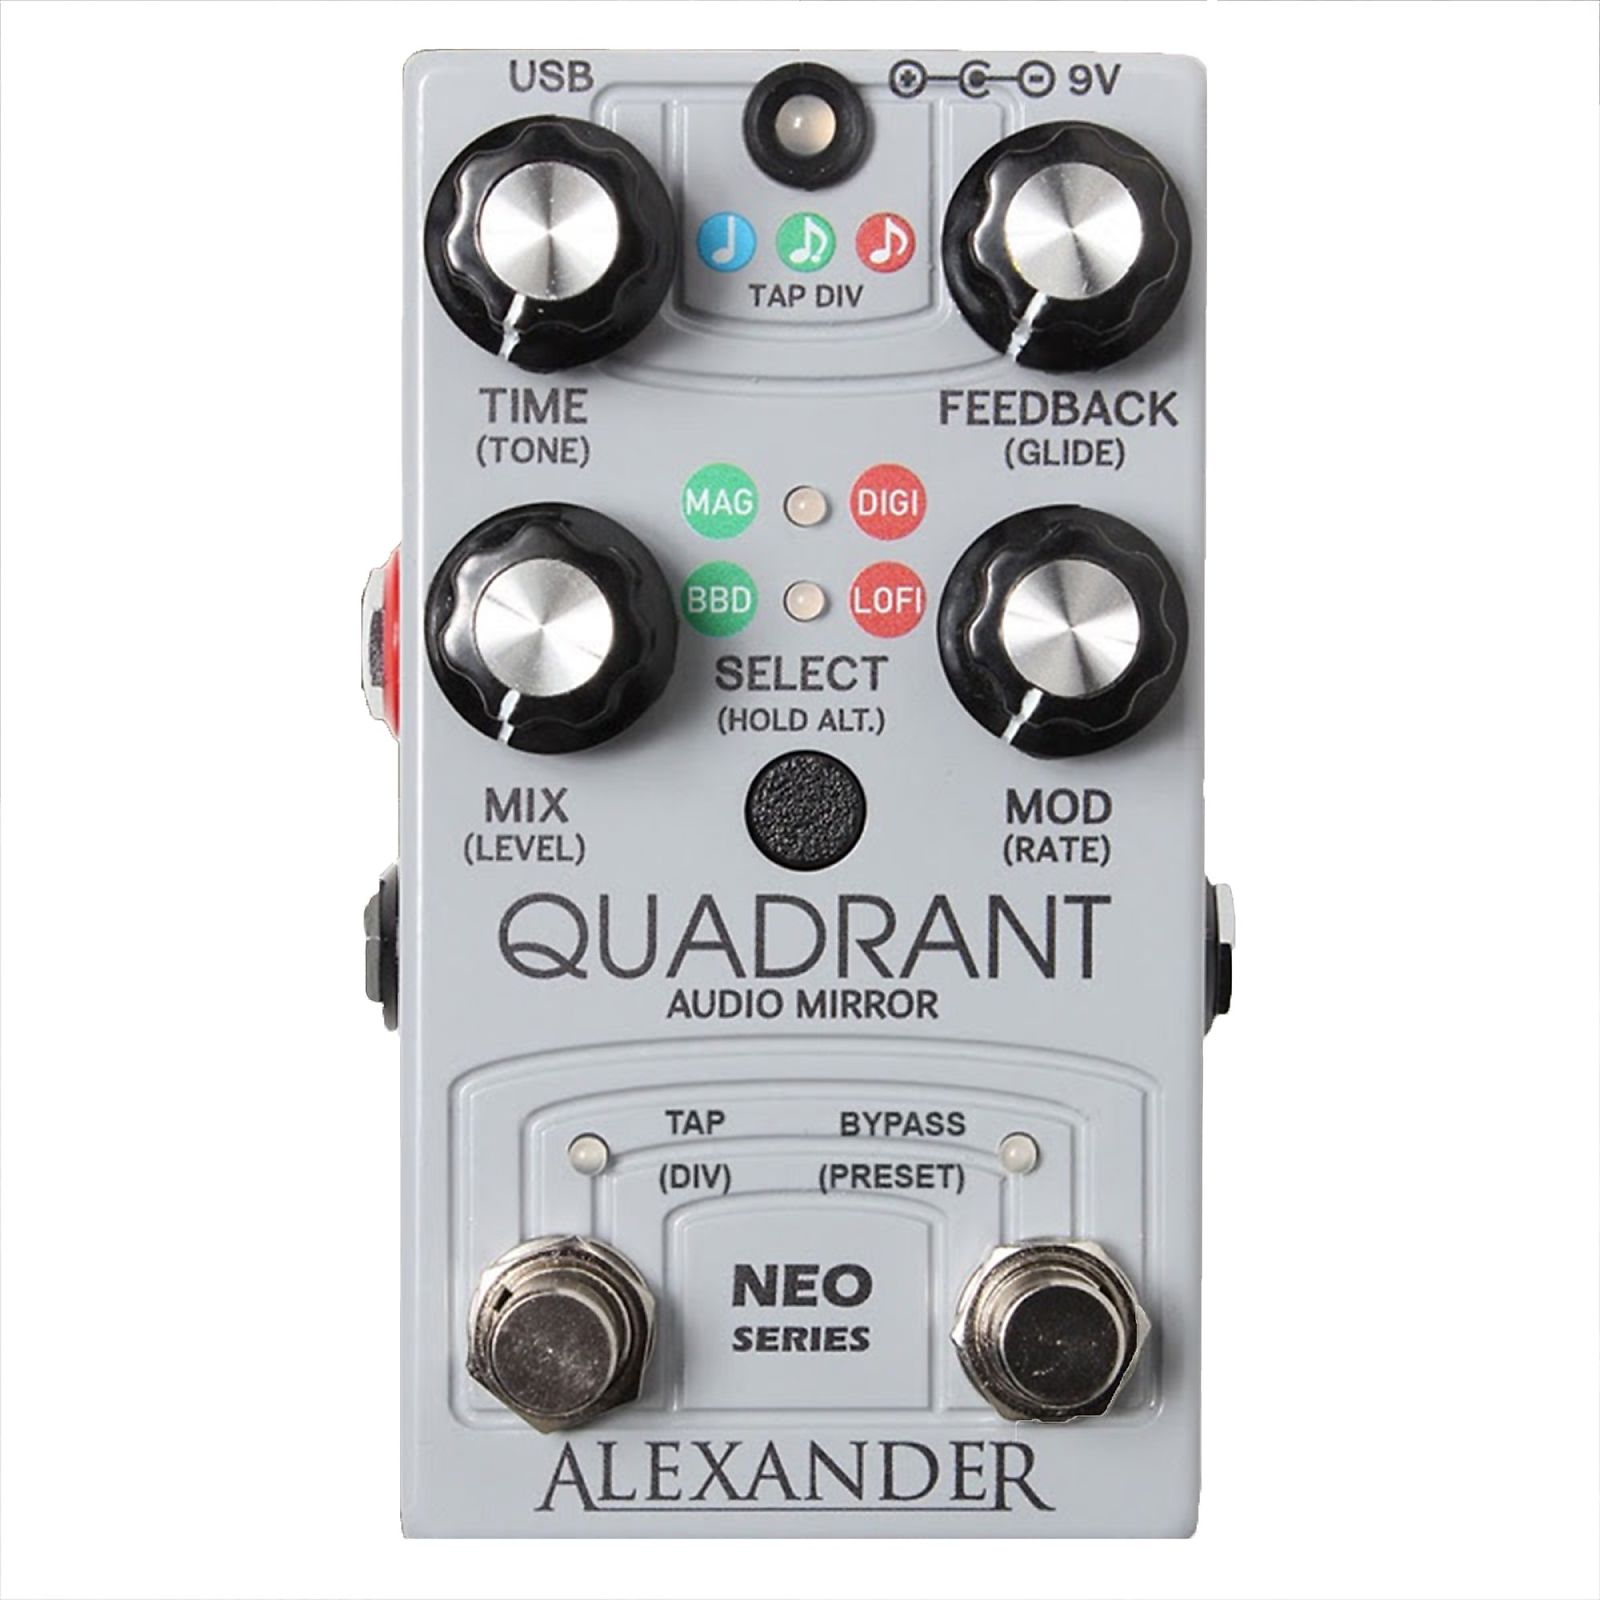 Alexander Pedals Quadrant Audio Mirror | Reverb